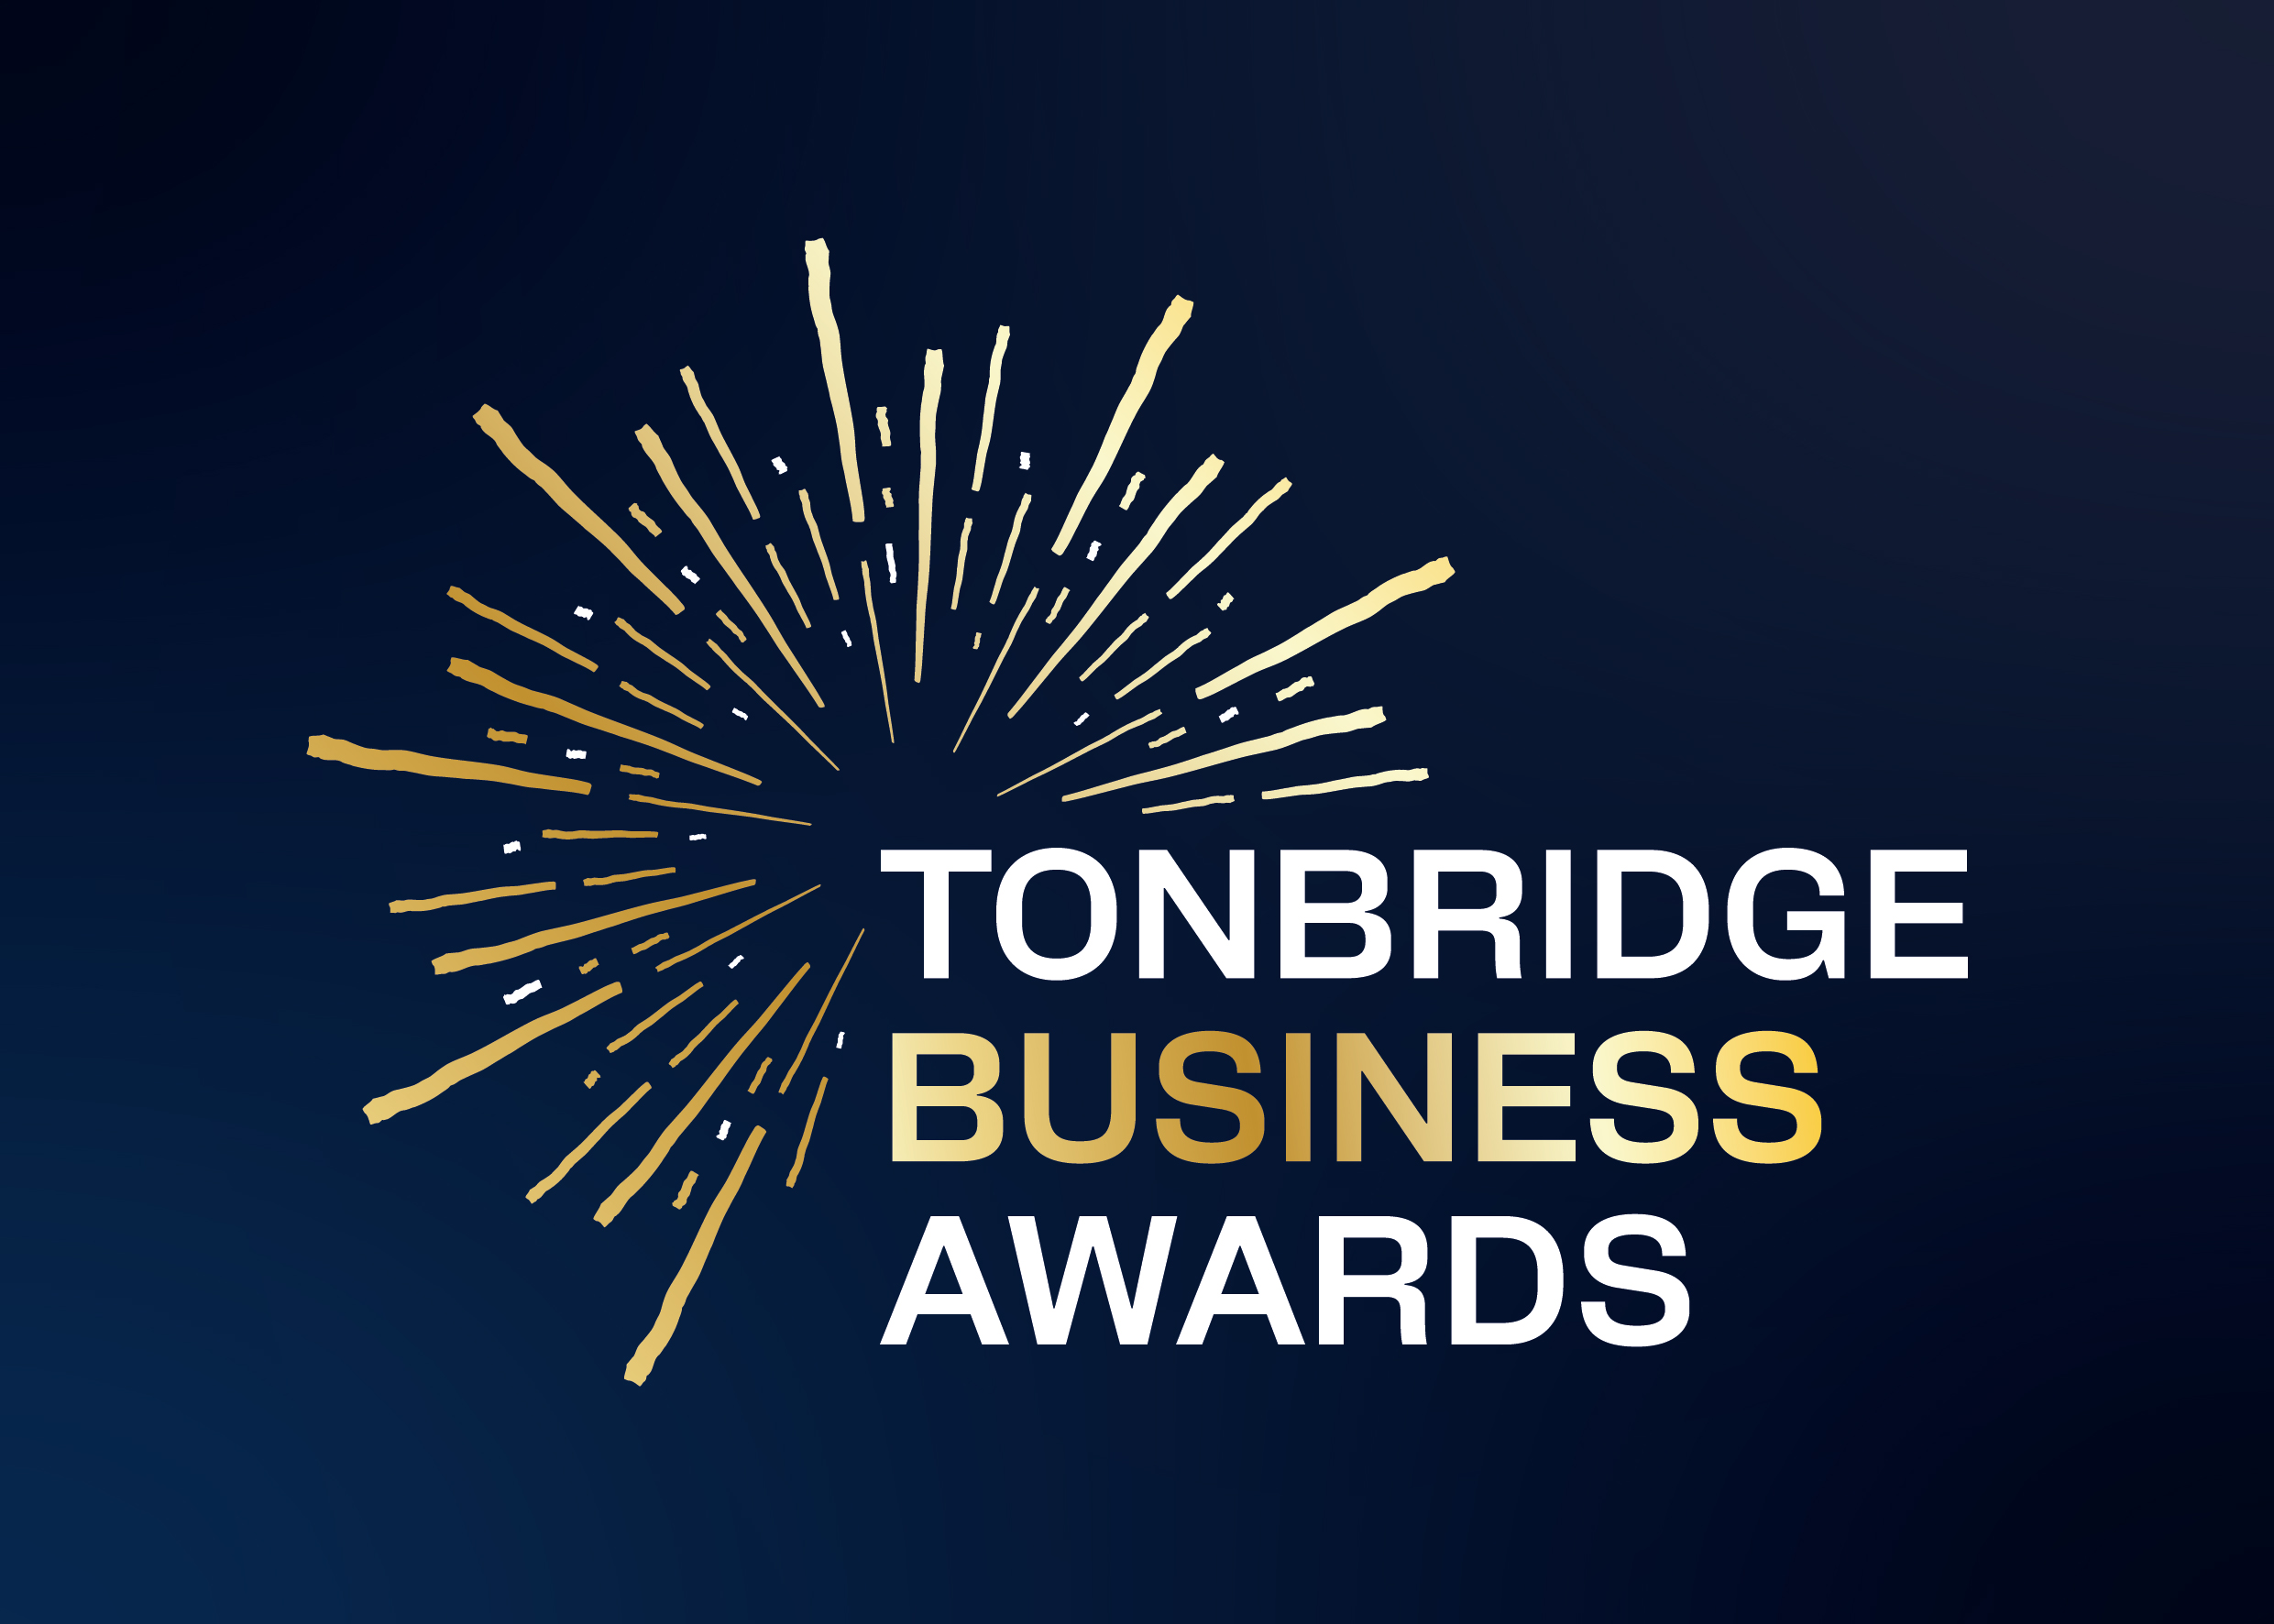 Tonbridge Business Awards logo